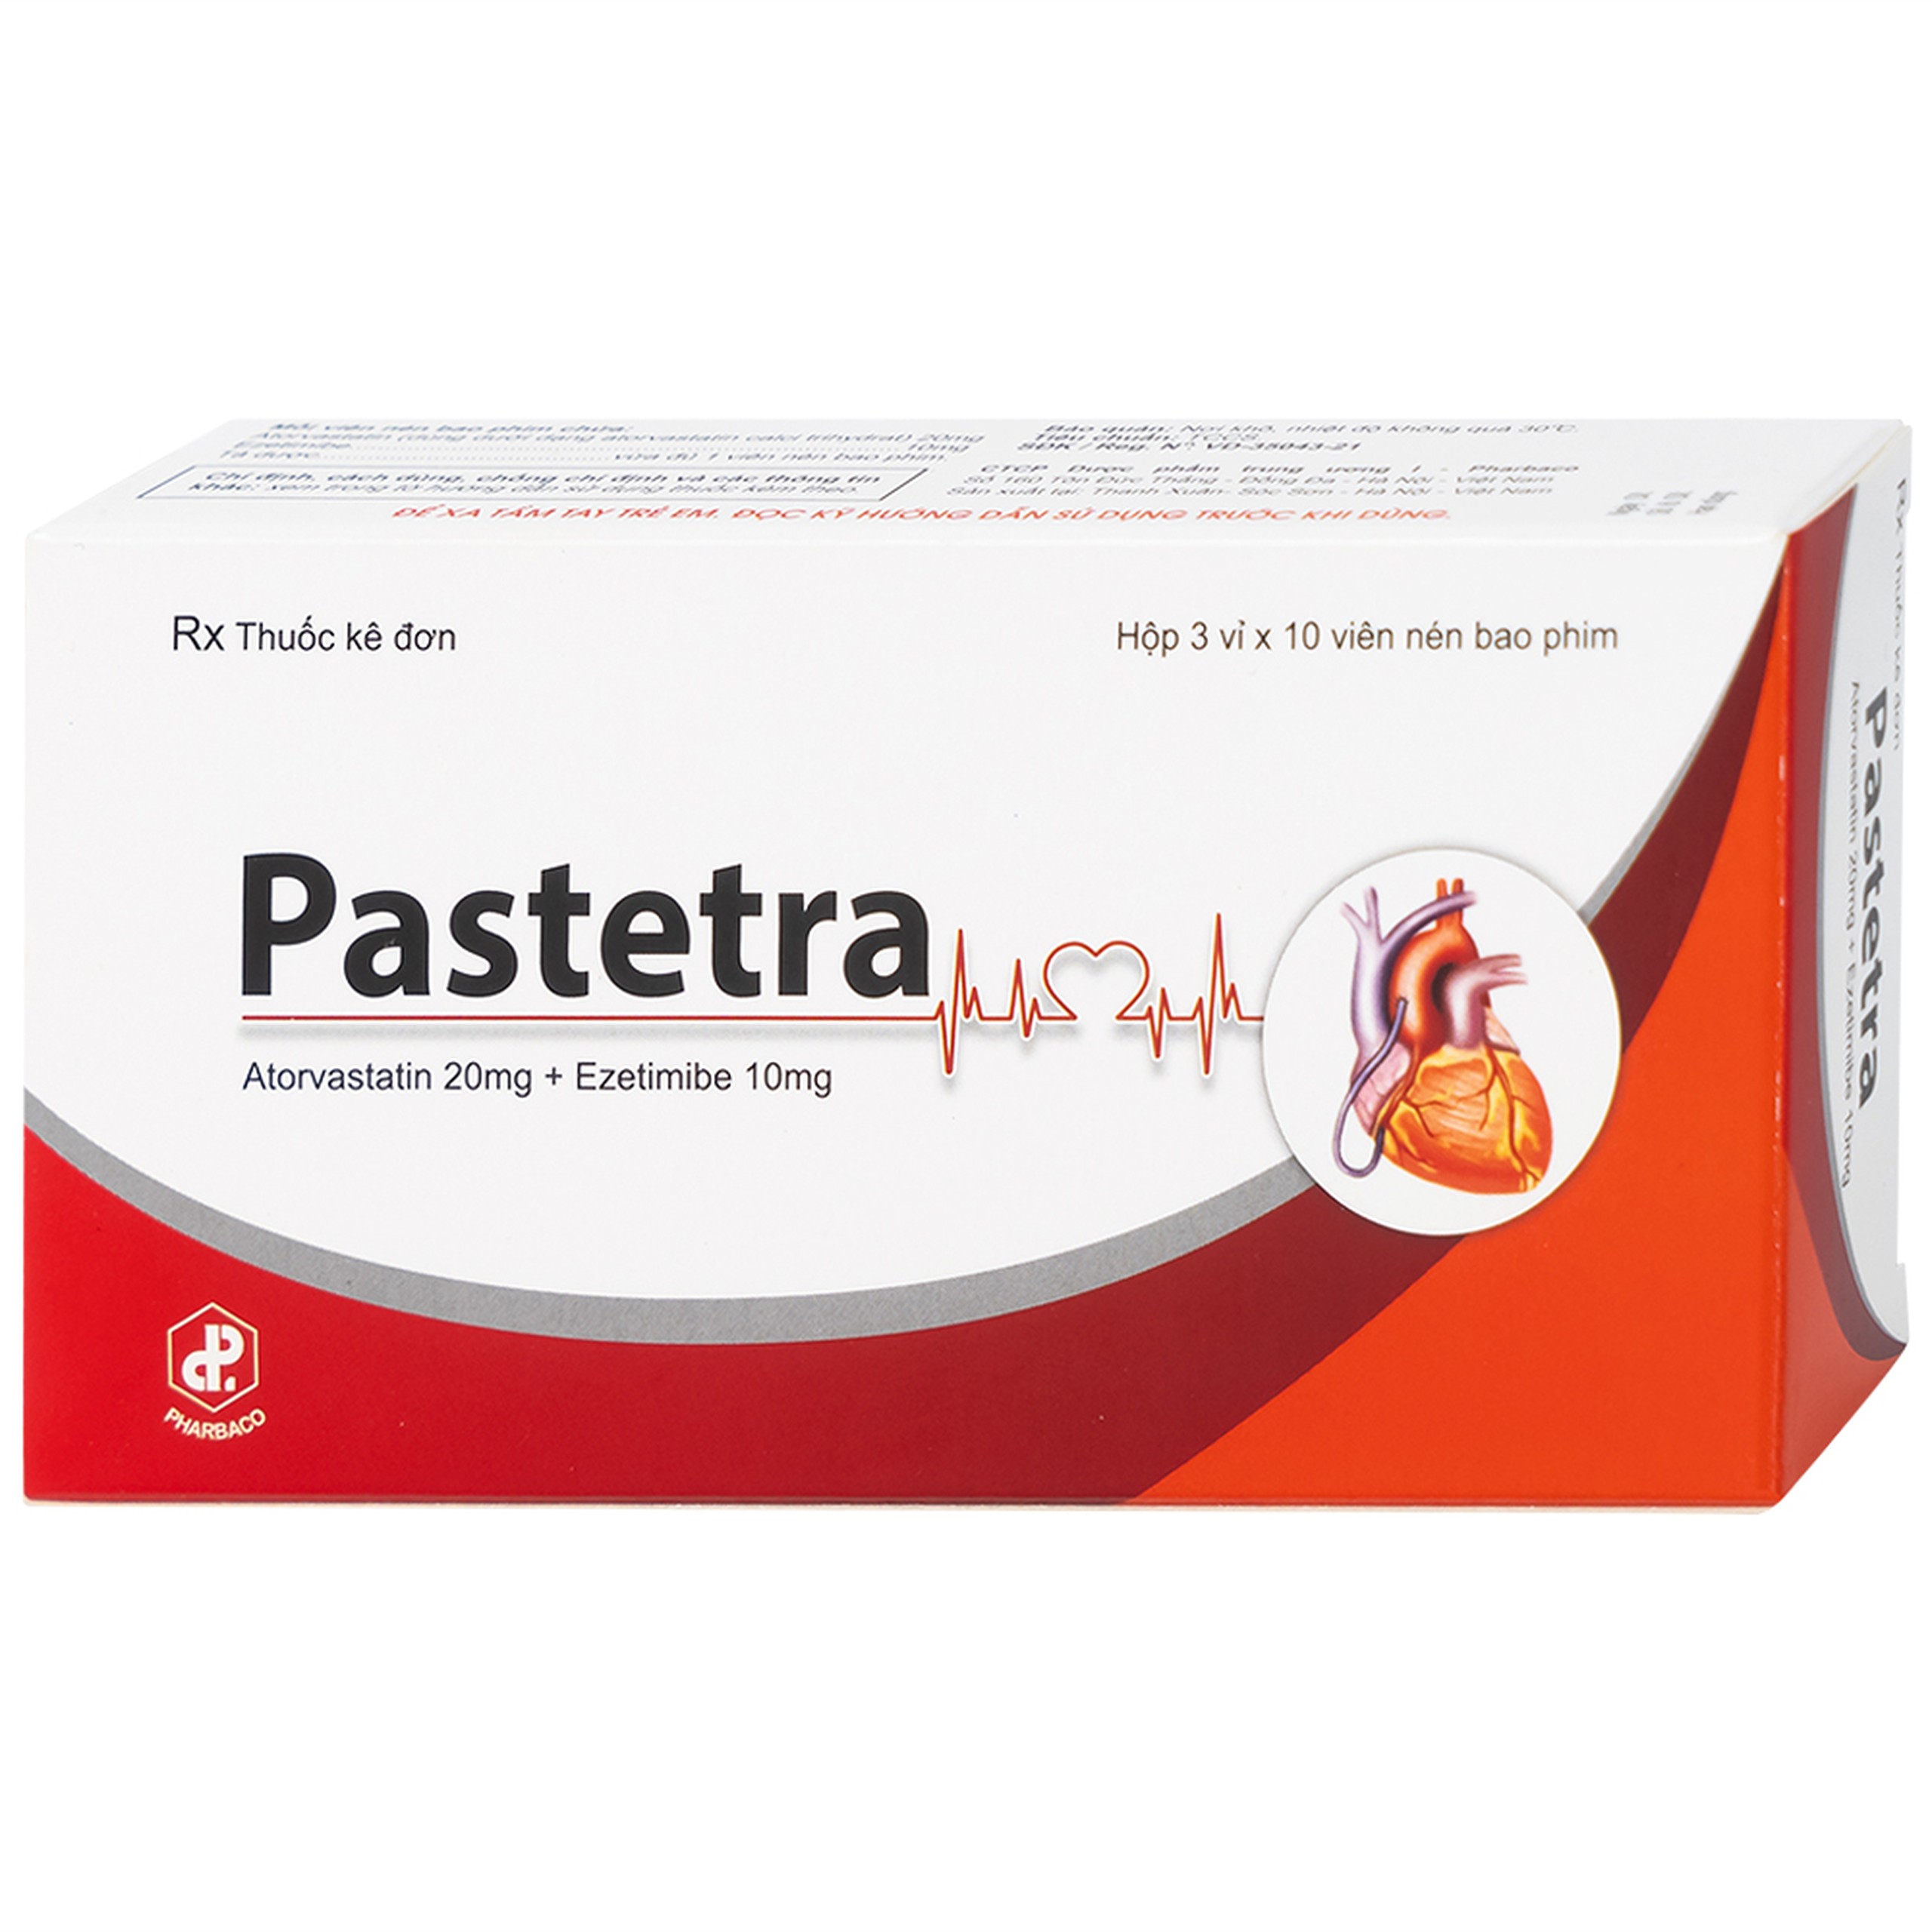 Thuốc Pastetra Pharbaco phòng ngừa các bệnh tim mạch, tăng cholesterol máu (3 vỉ x 10 viên)